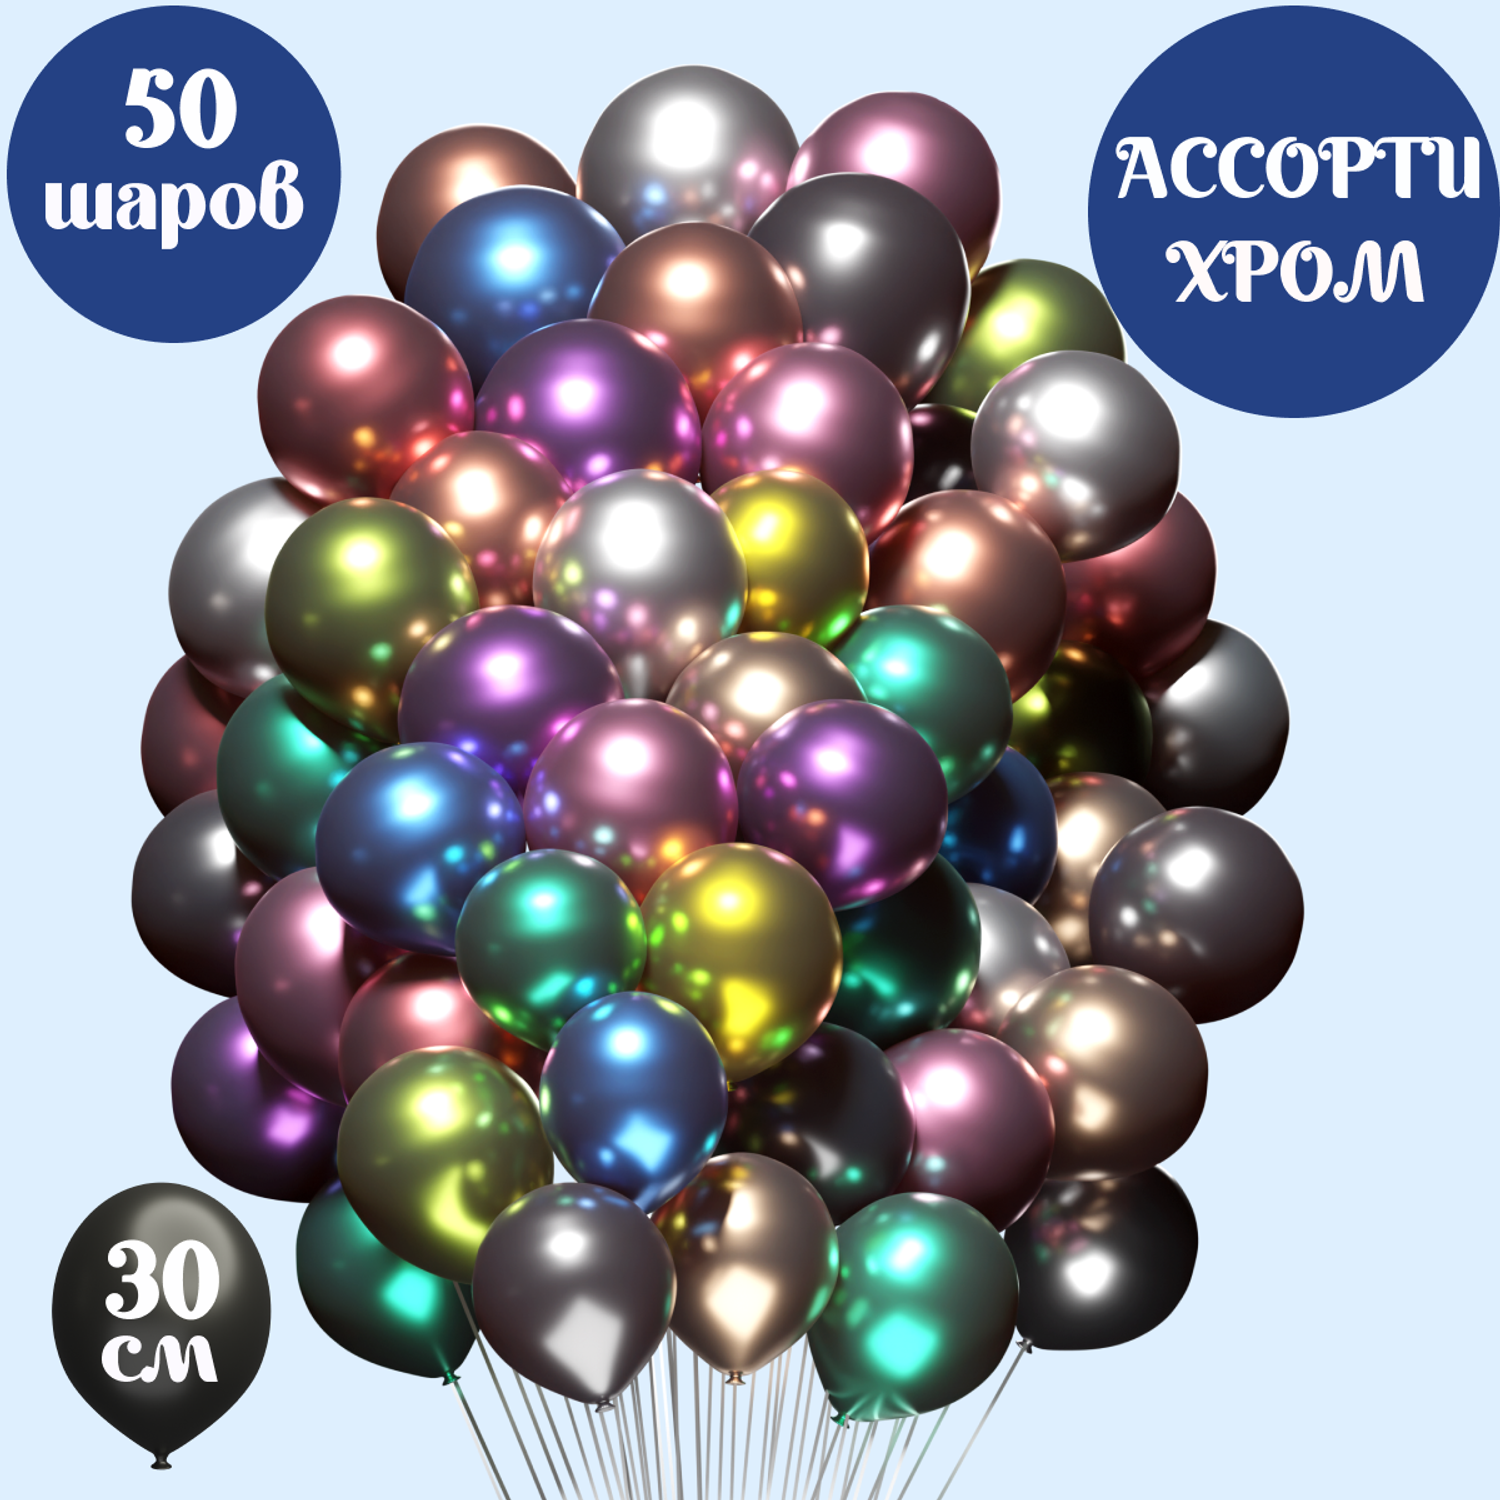 Воздушные шары хром Мишины шарики В наборе 50 штук ассорти цветов для праздника - фото 1